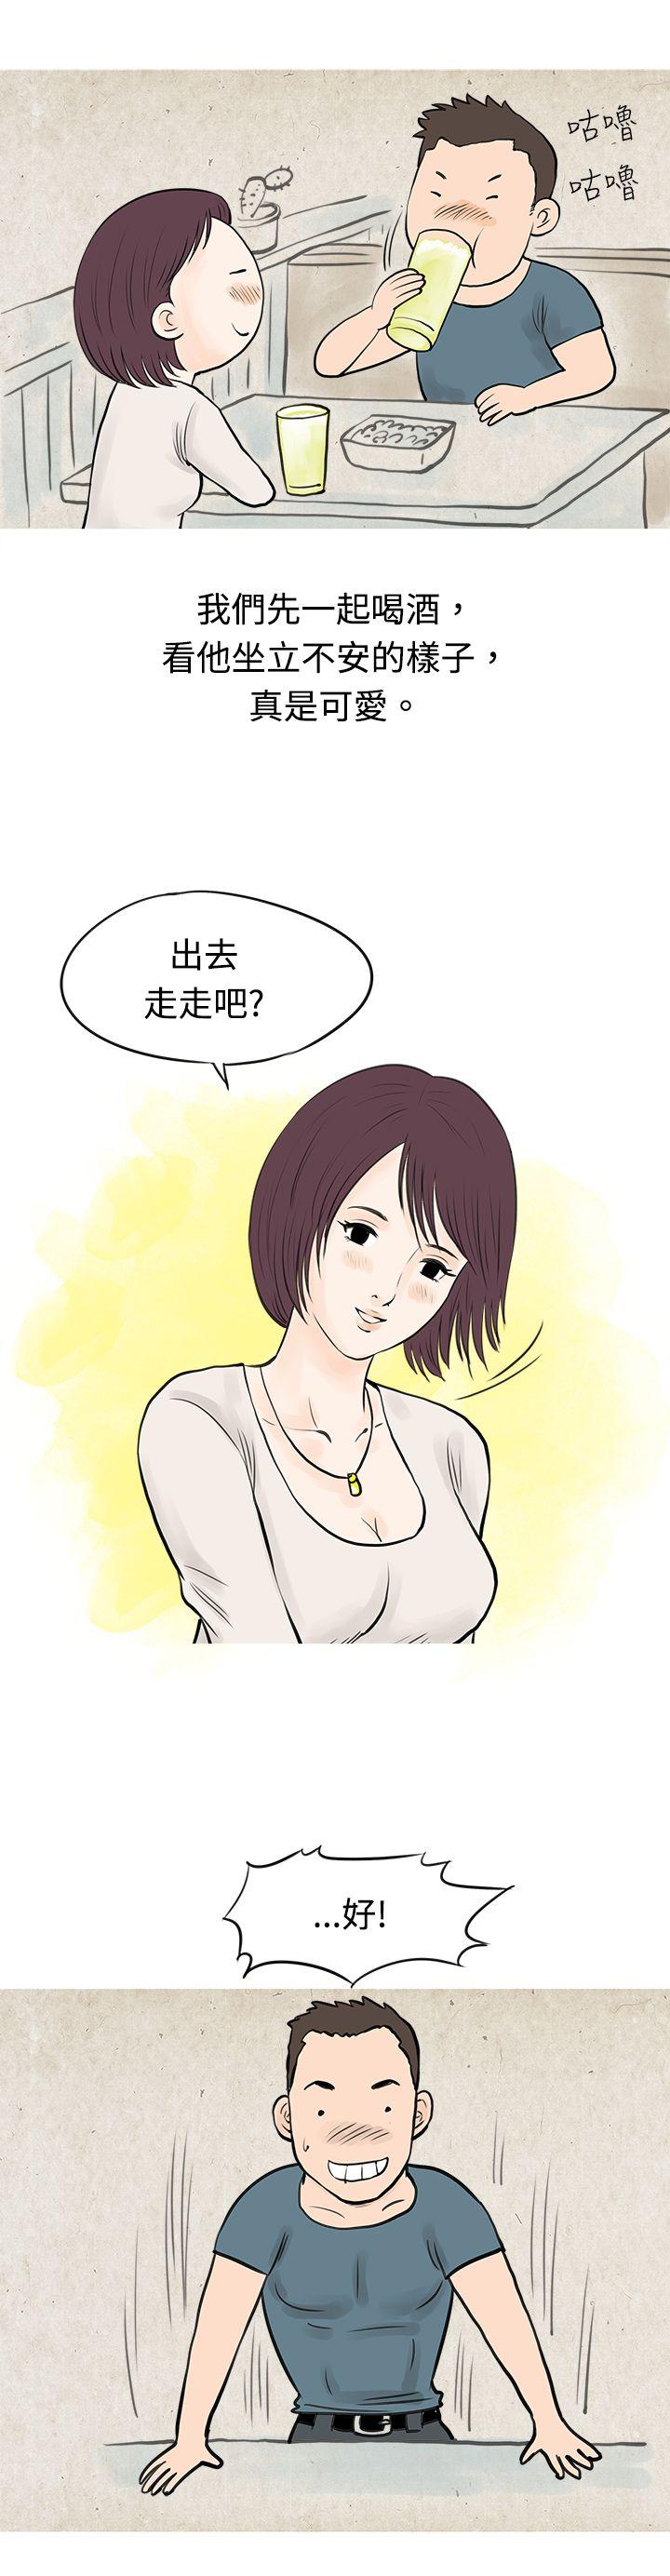 韩国污漫画 秘密Story 到健身房解决需求(下) 7